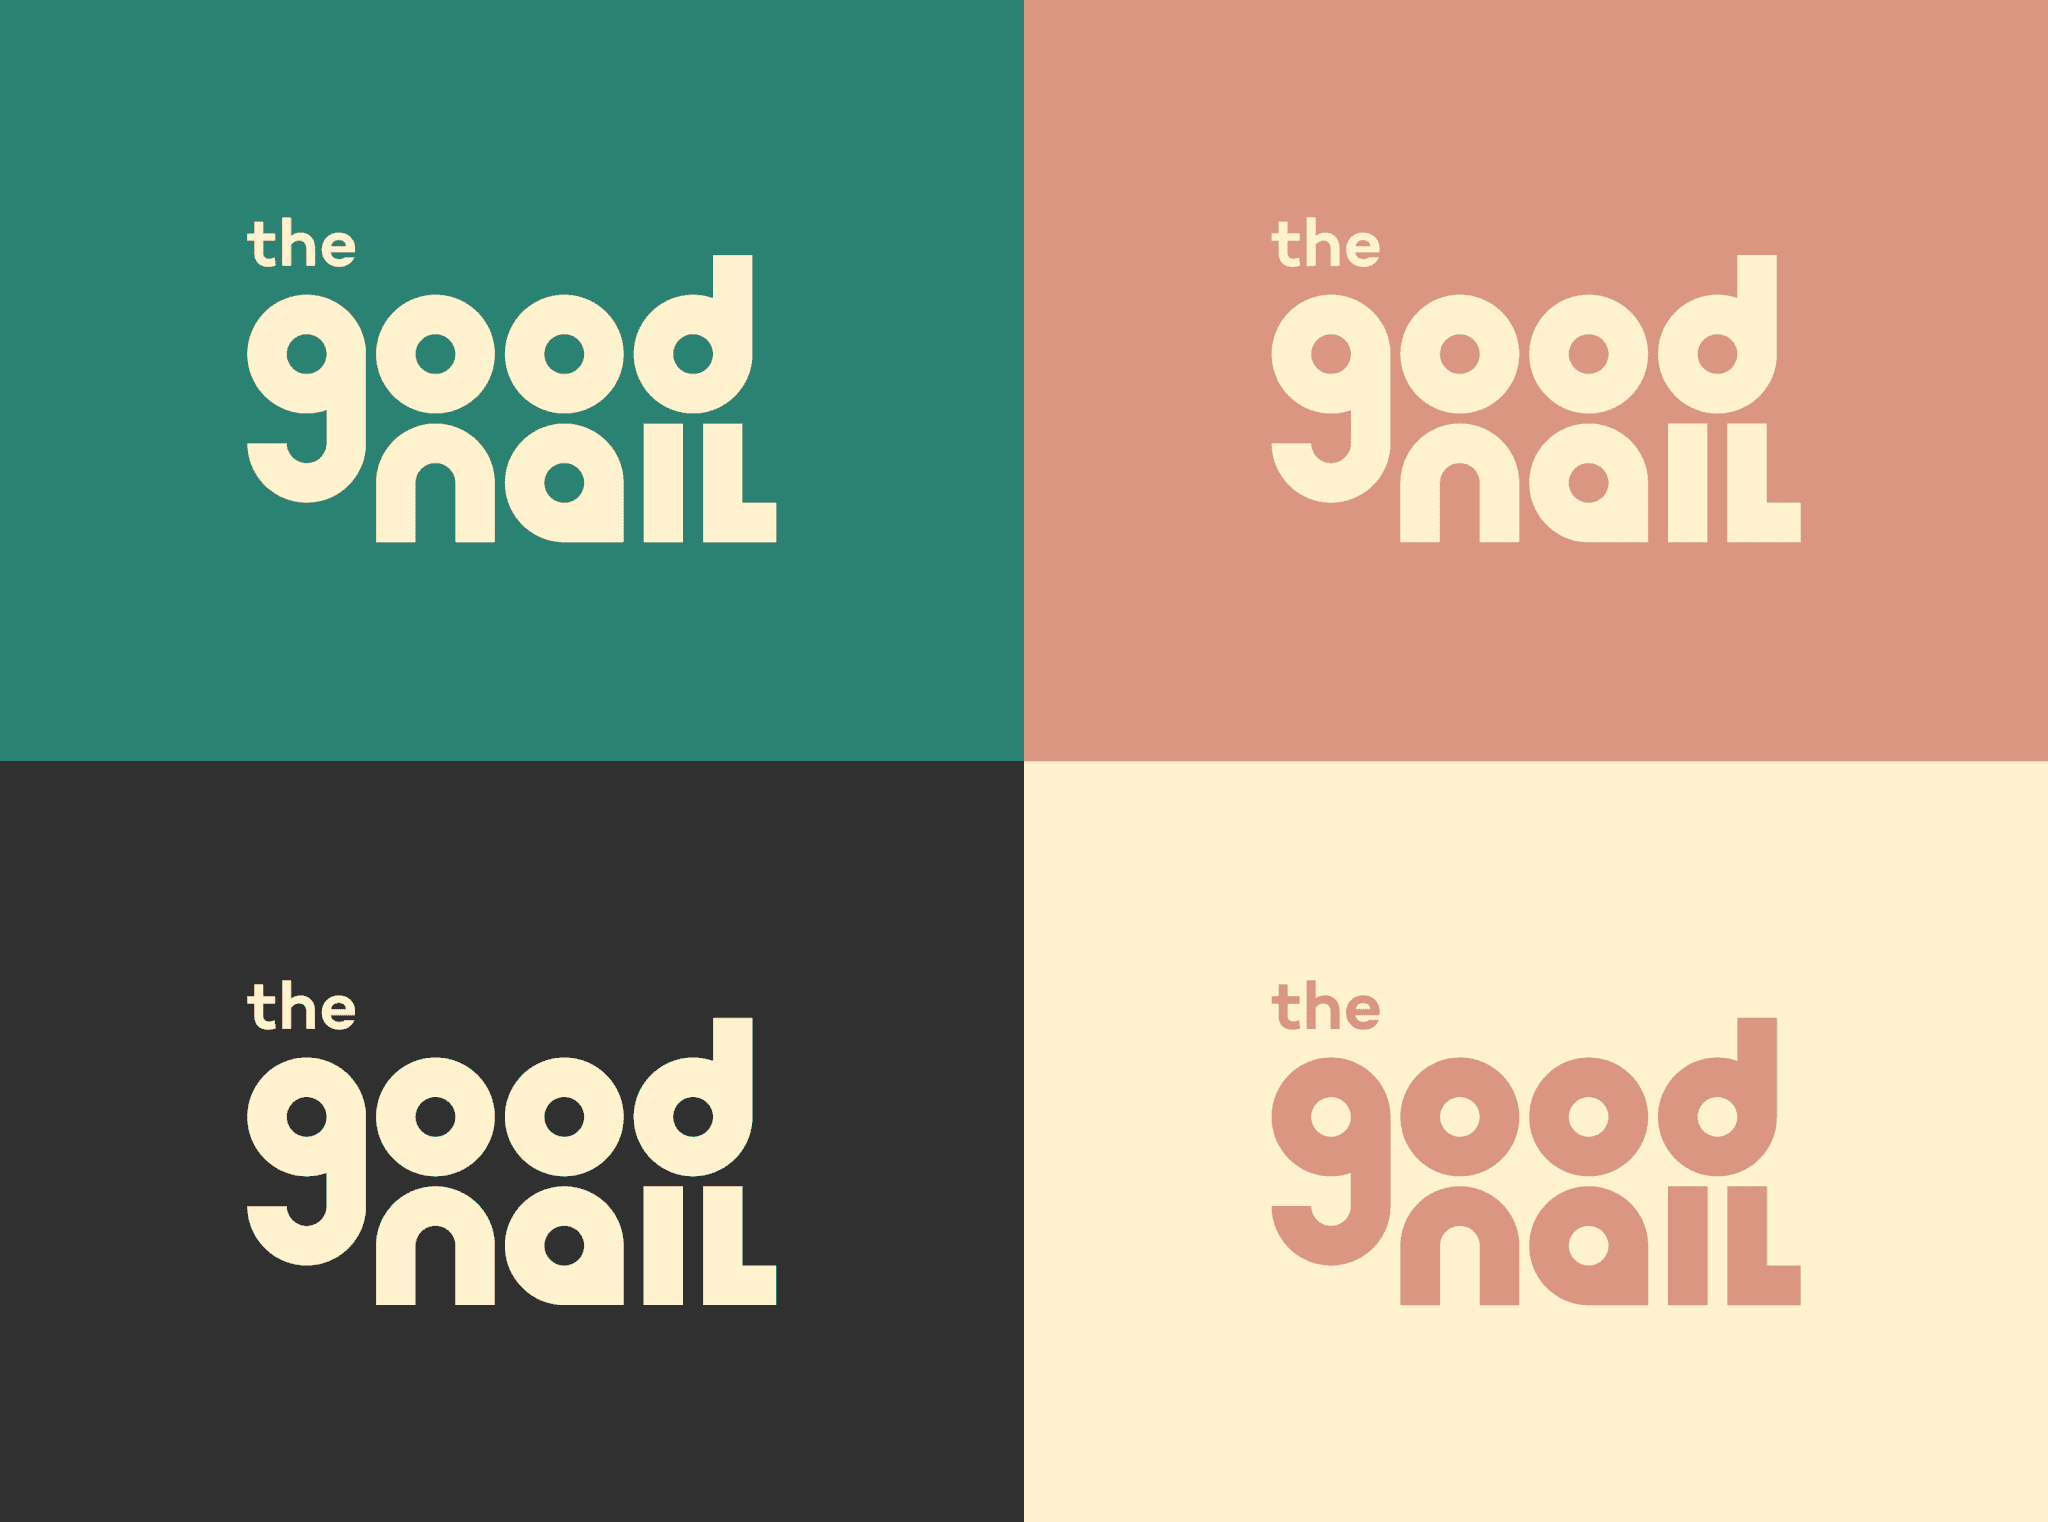 The Good Nail logos